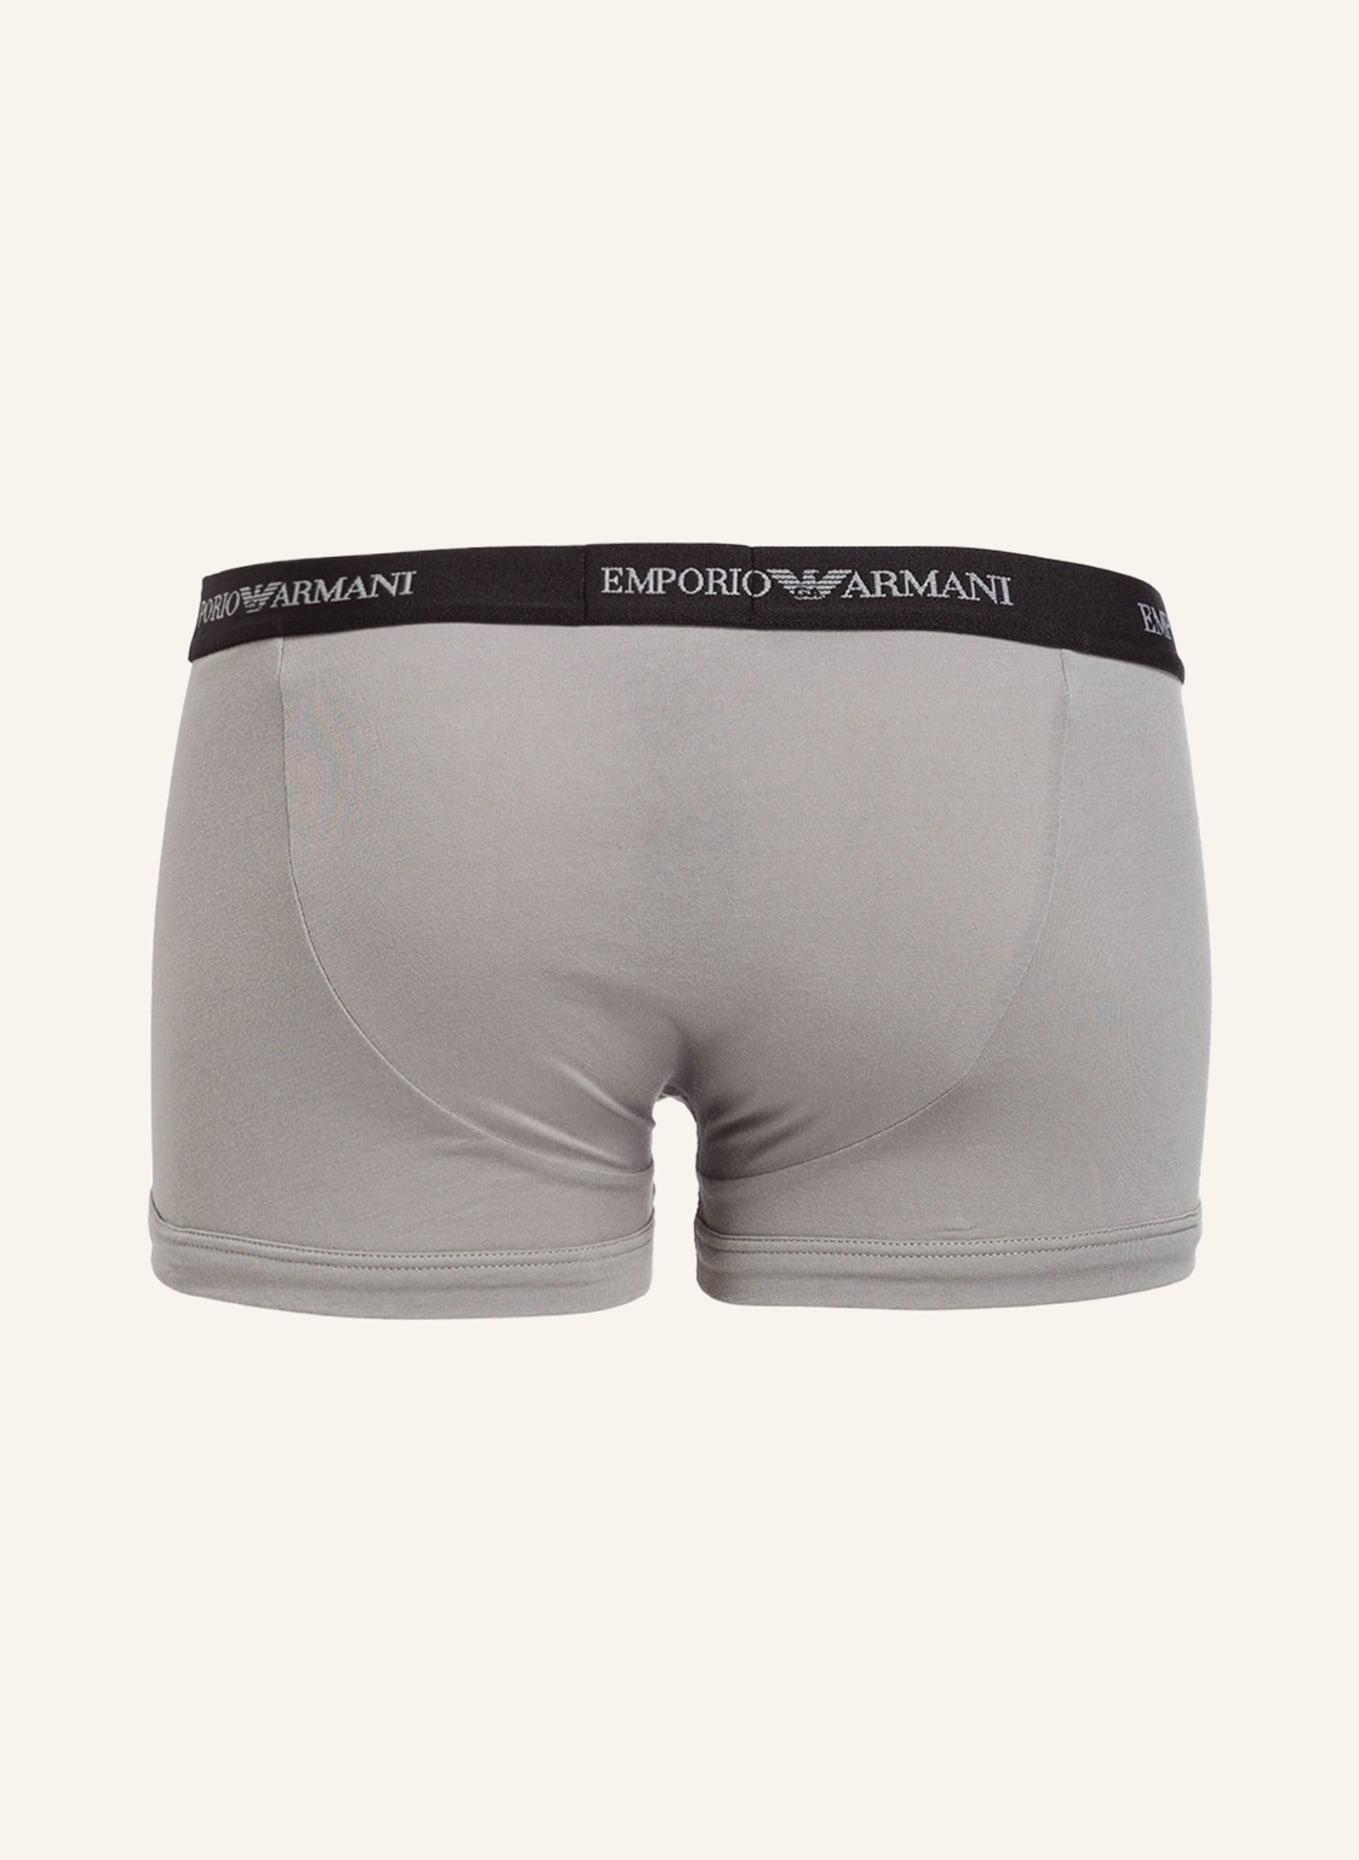 EMPORIO ARMANI 3-pack boxer shorts, Color: BLACK/ WHITE/ GRAY (Image 2)